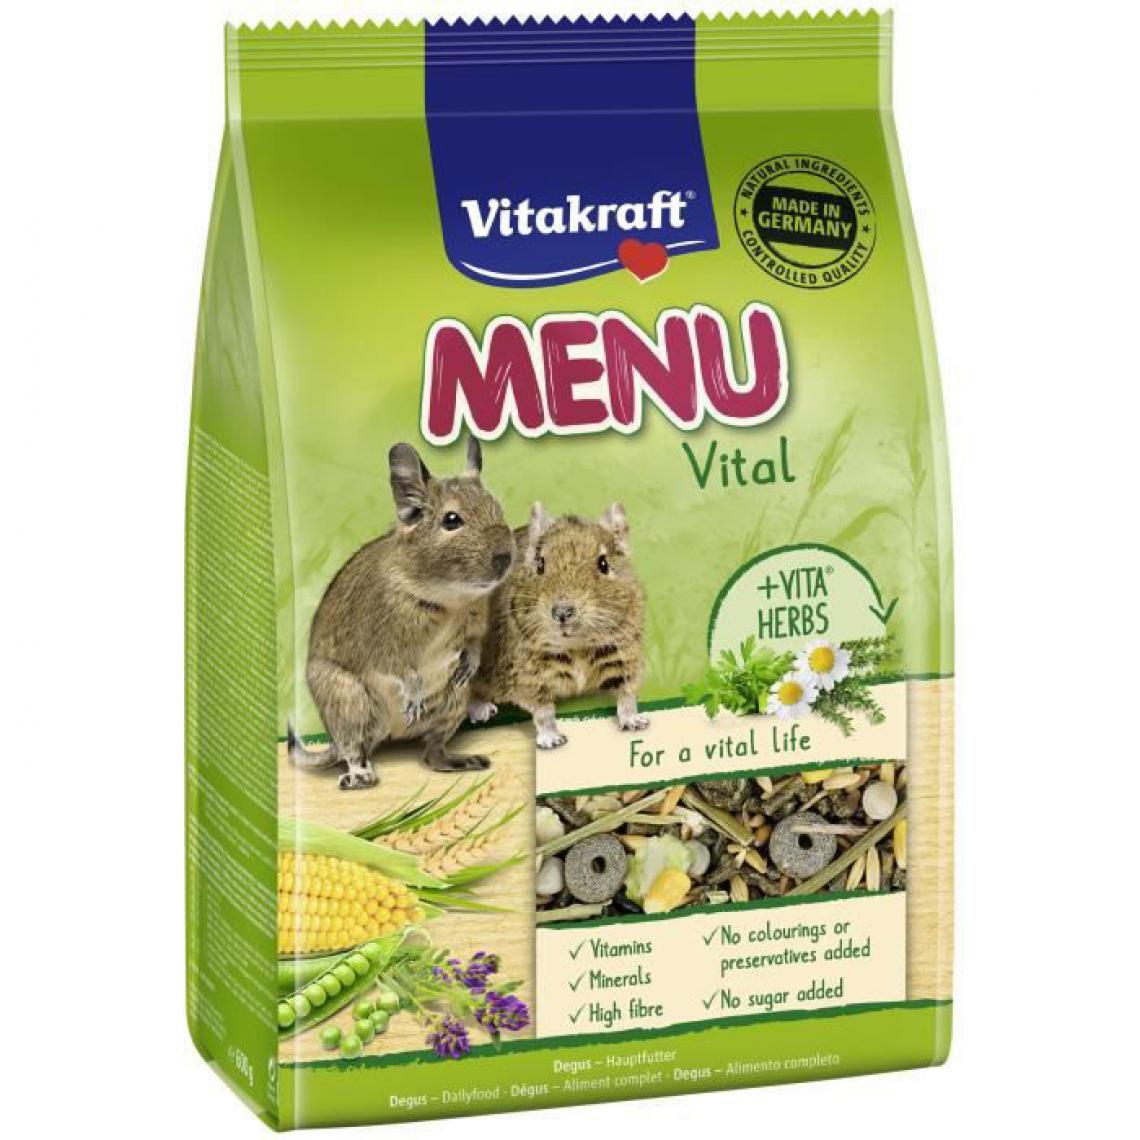 Vitakraft - VITAKRAFT Menu Alimentation complète pour Degus - Lot de 5x600g - Alimentation rongeur